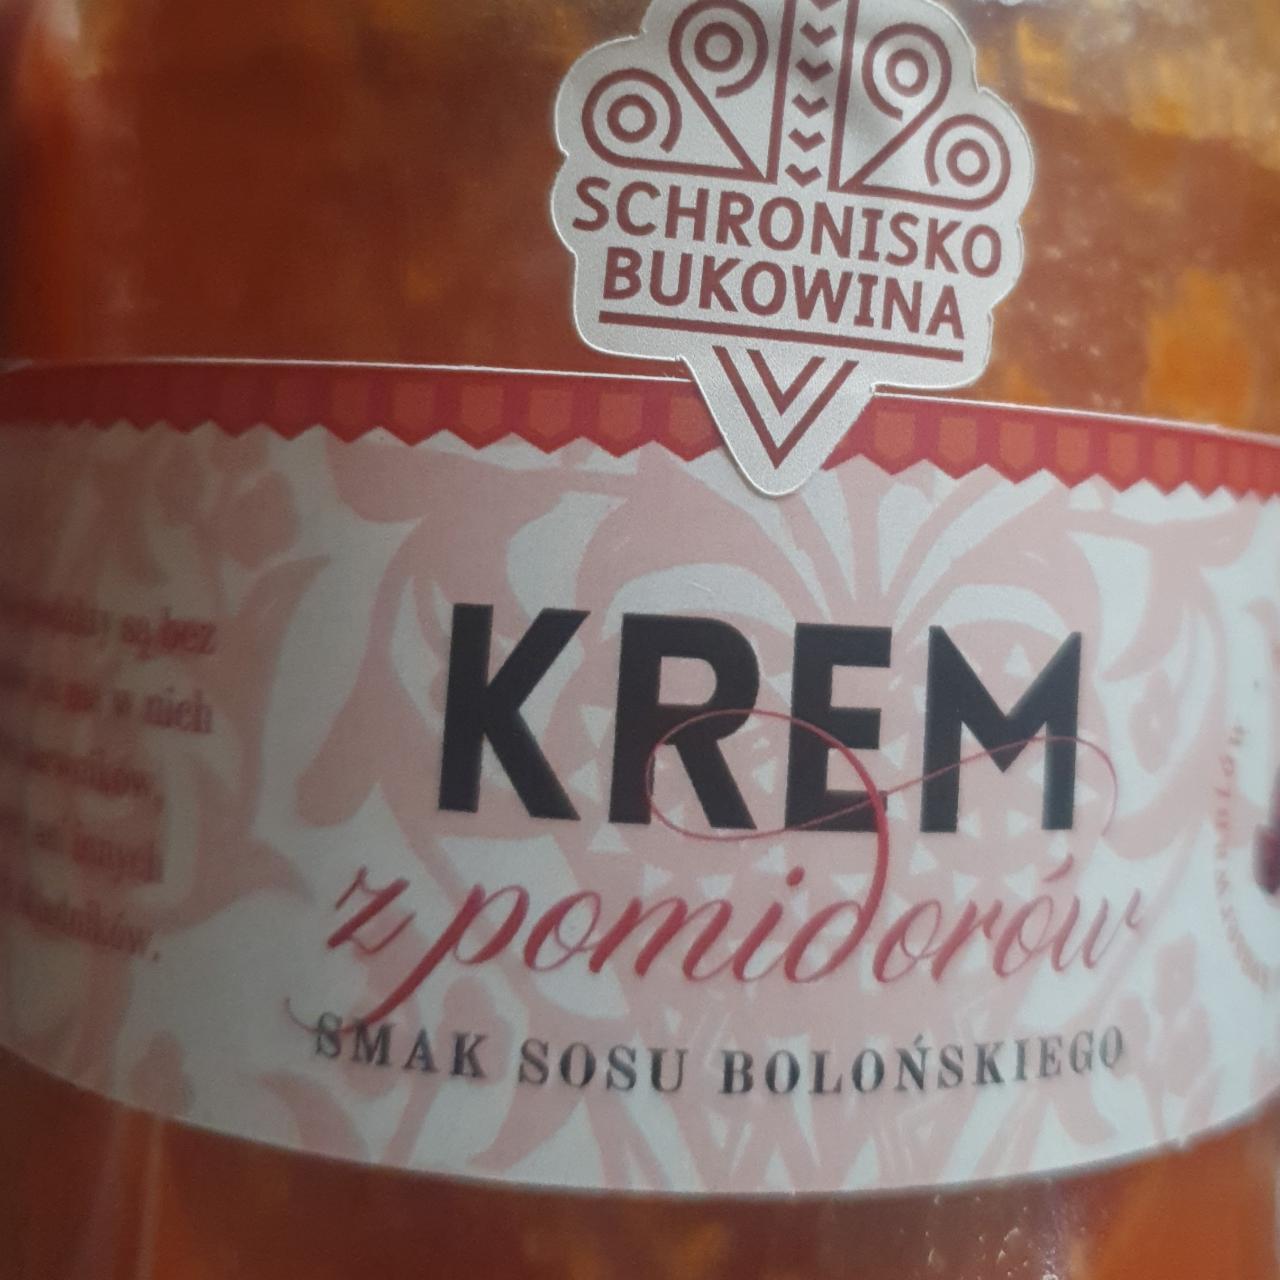 Zdjęcia - Krem z pomidorów smak sosu bolońskiego Schronisko Bukowina